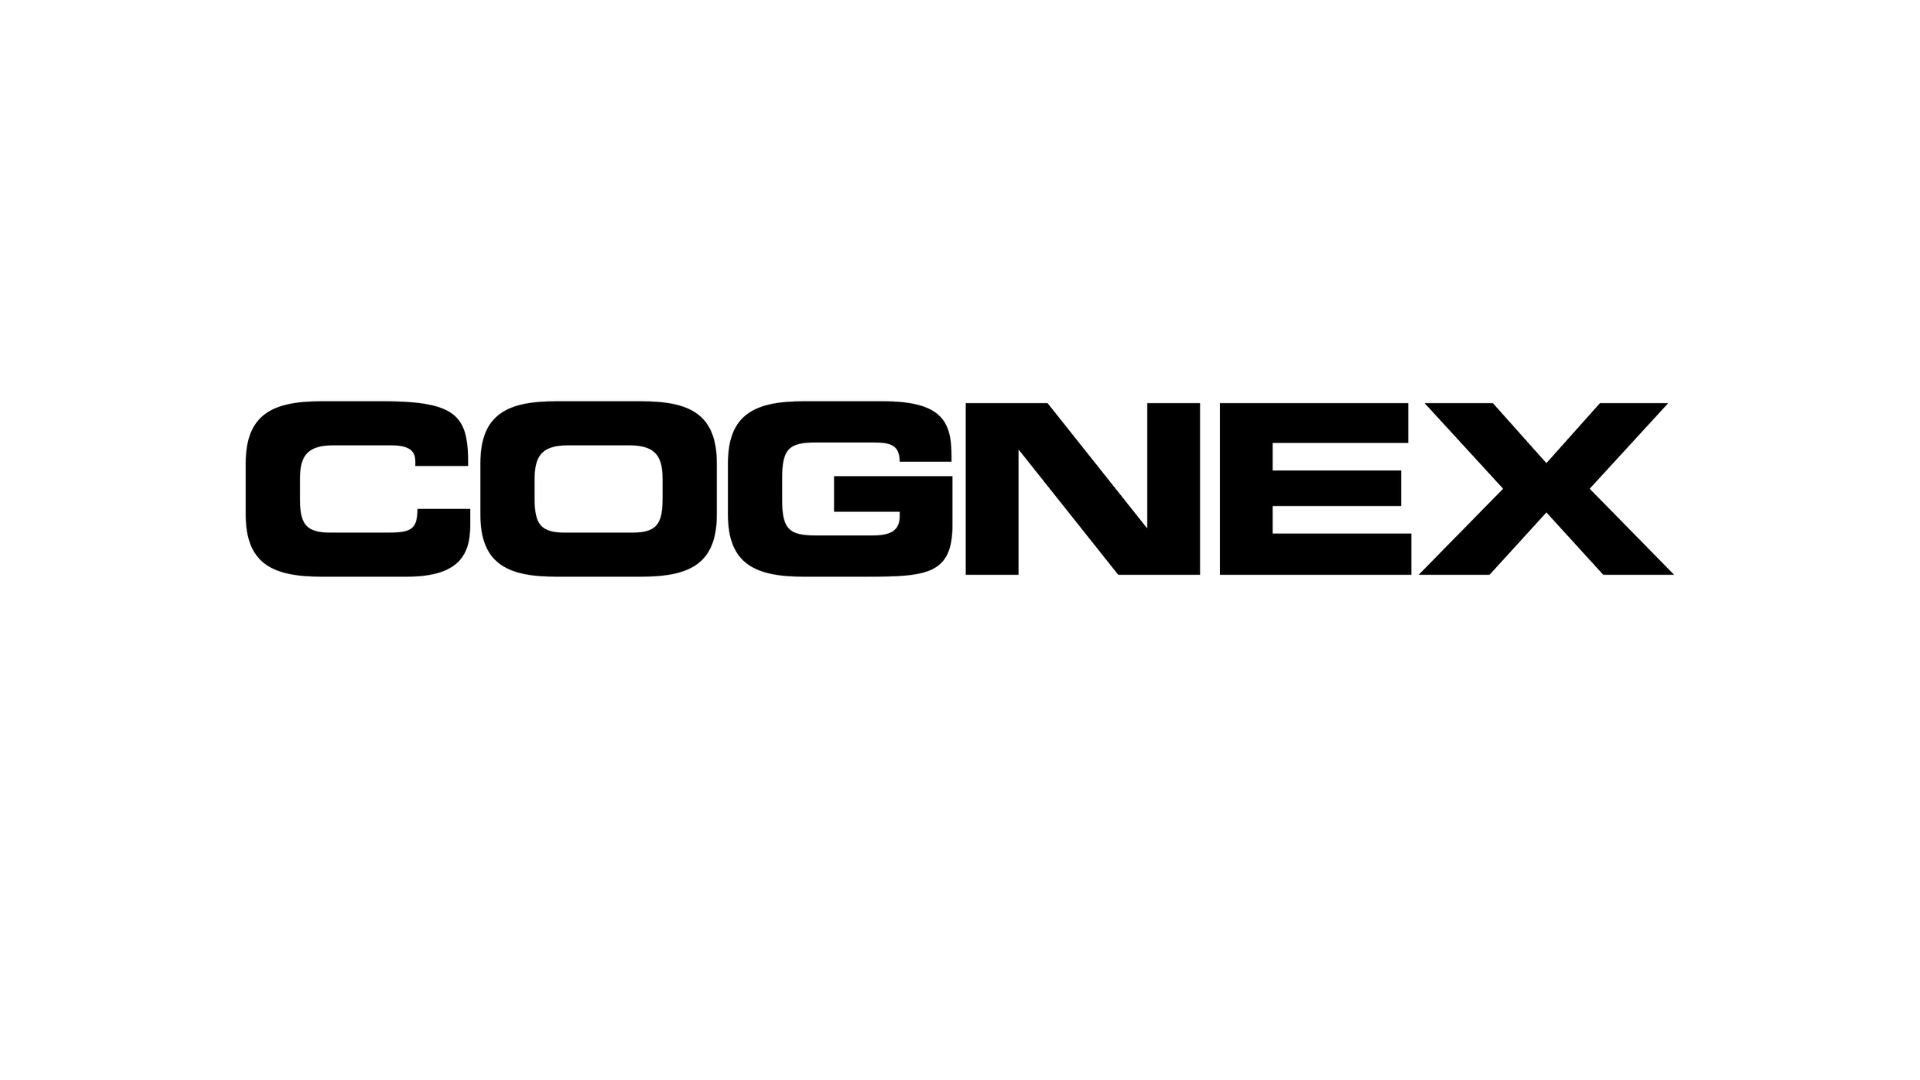 cognex